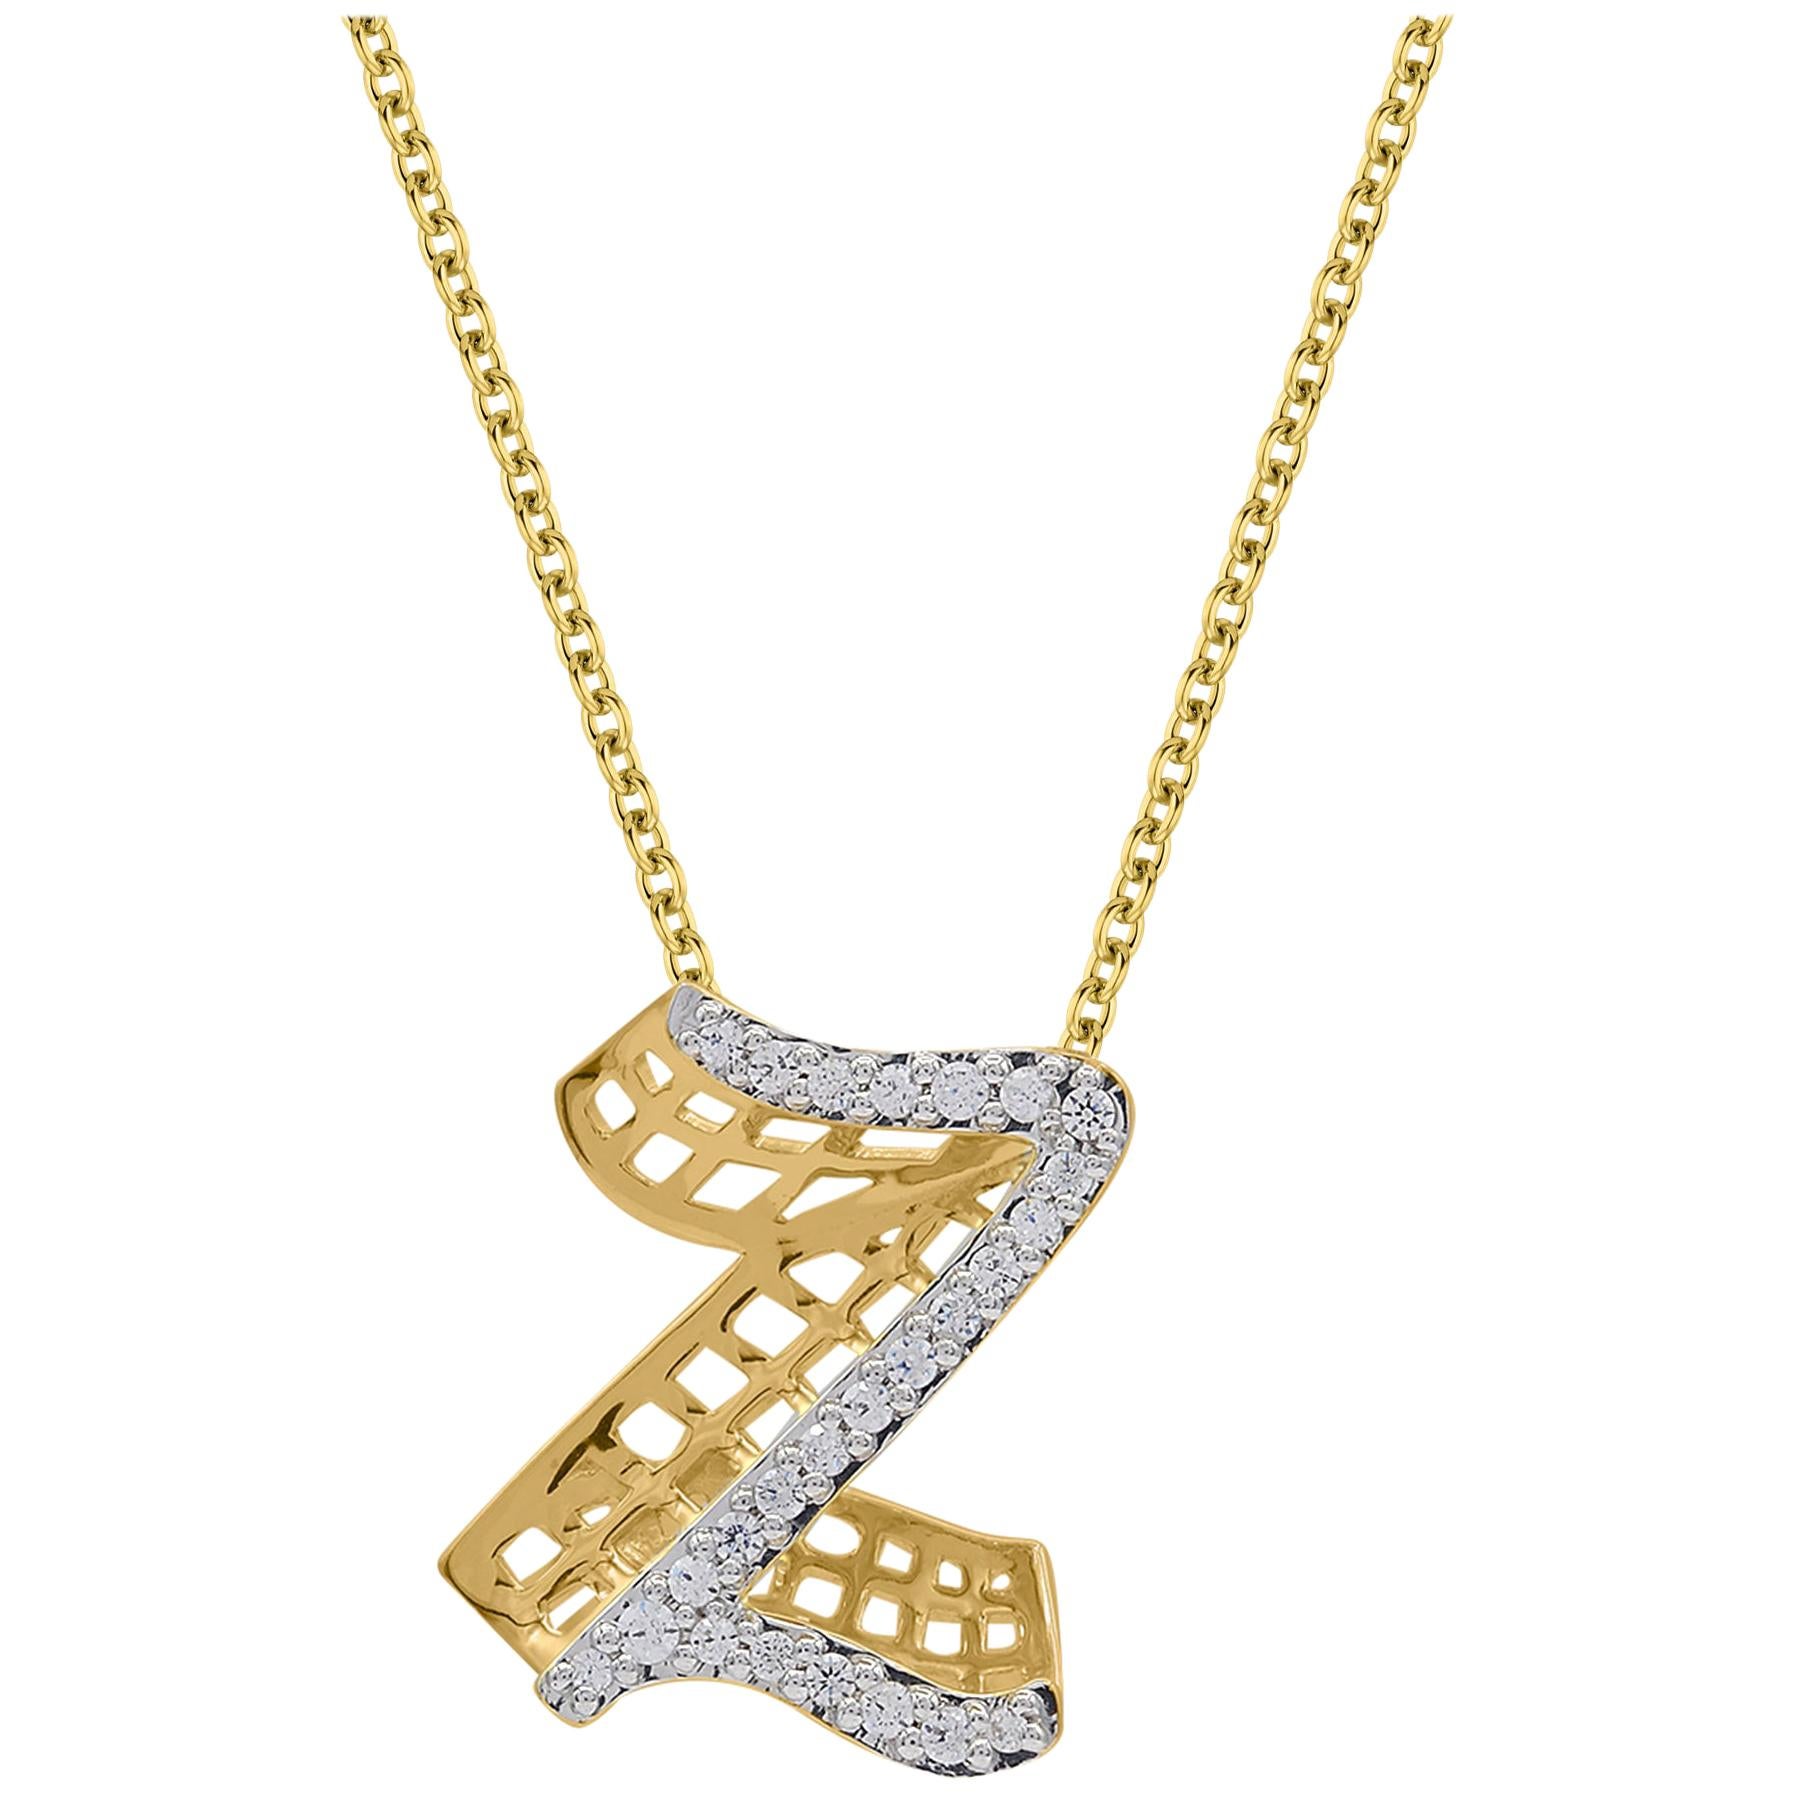 TJD Pendentifs en or jaune 18 carats avec diamants de 0,25 carat pour l'initiale Z' Alphabet 3D